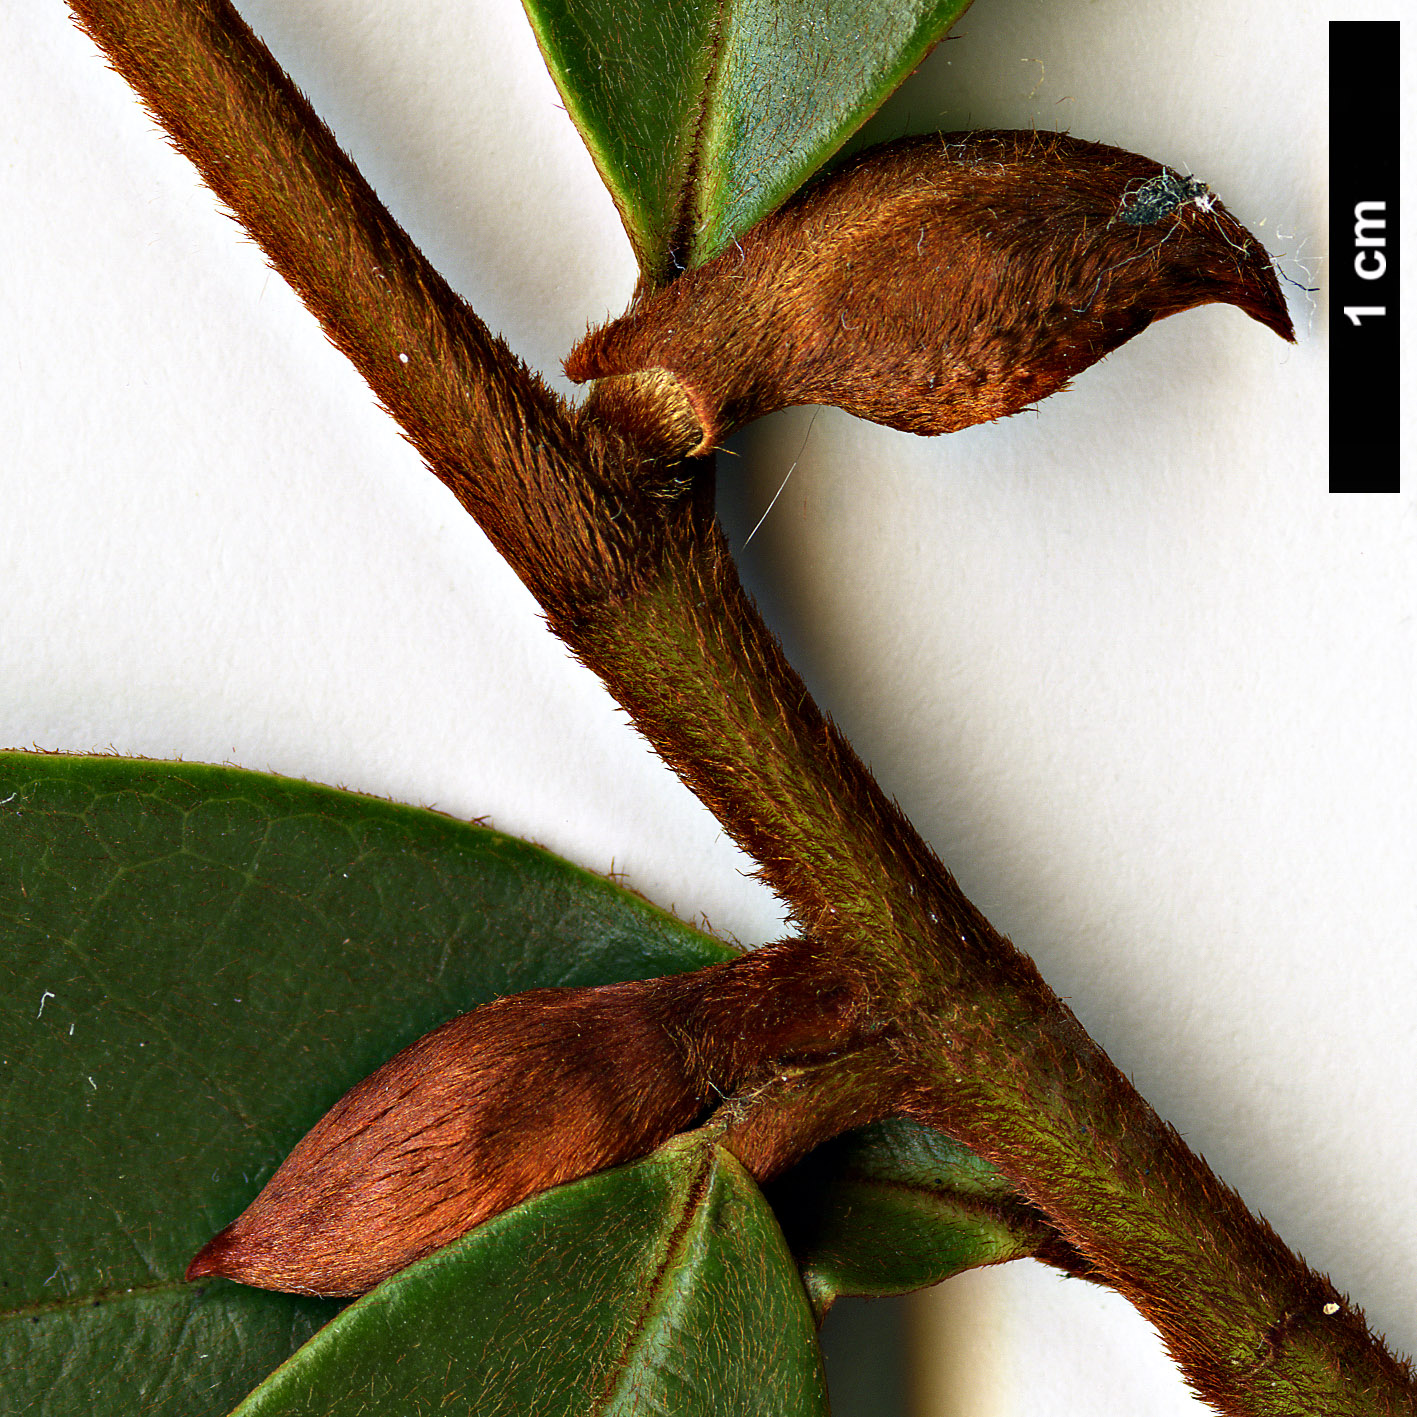 High resolution image: Family: Magnoliaceae - Genus: Magnolia - Taxon: laevifolia